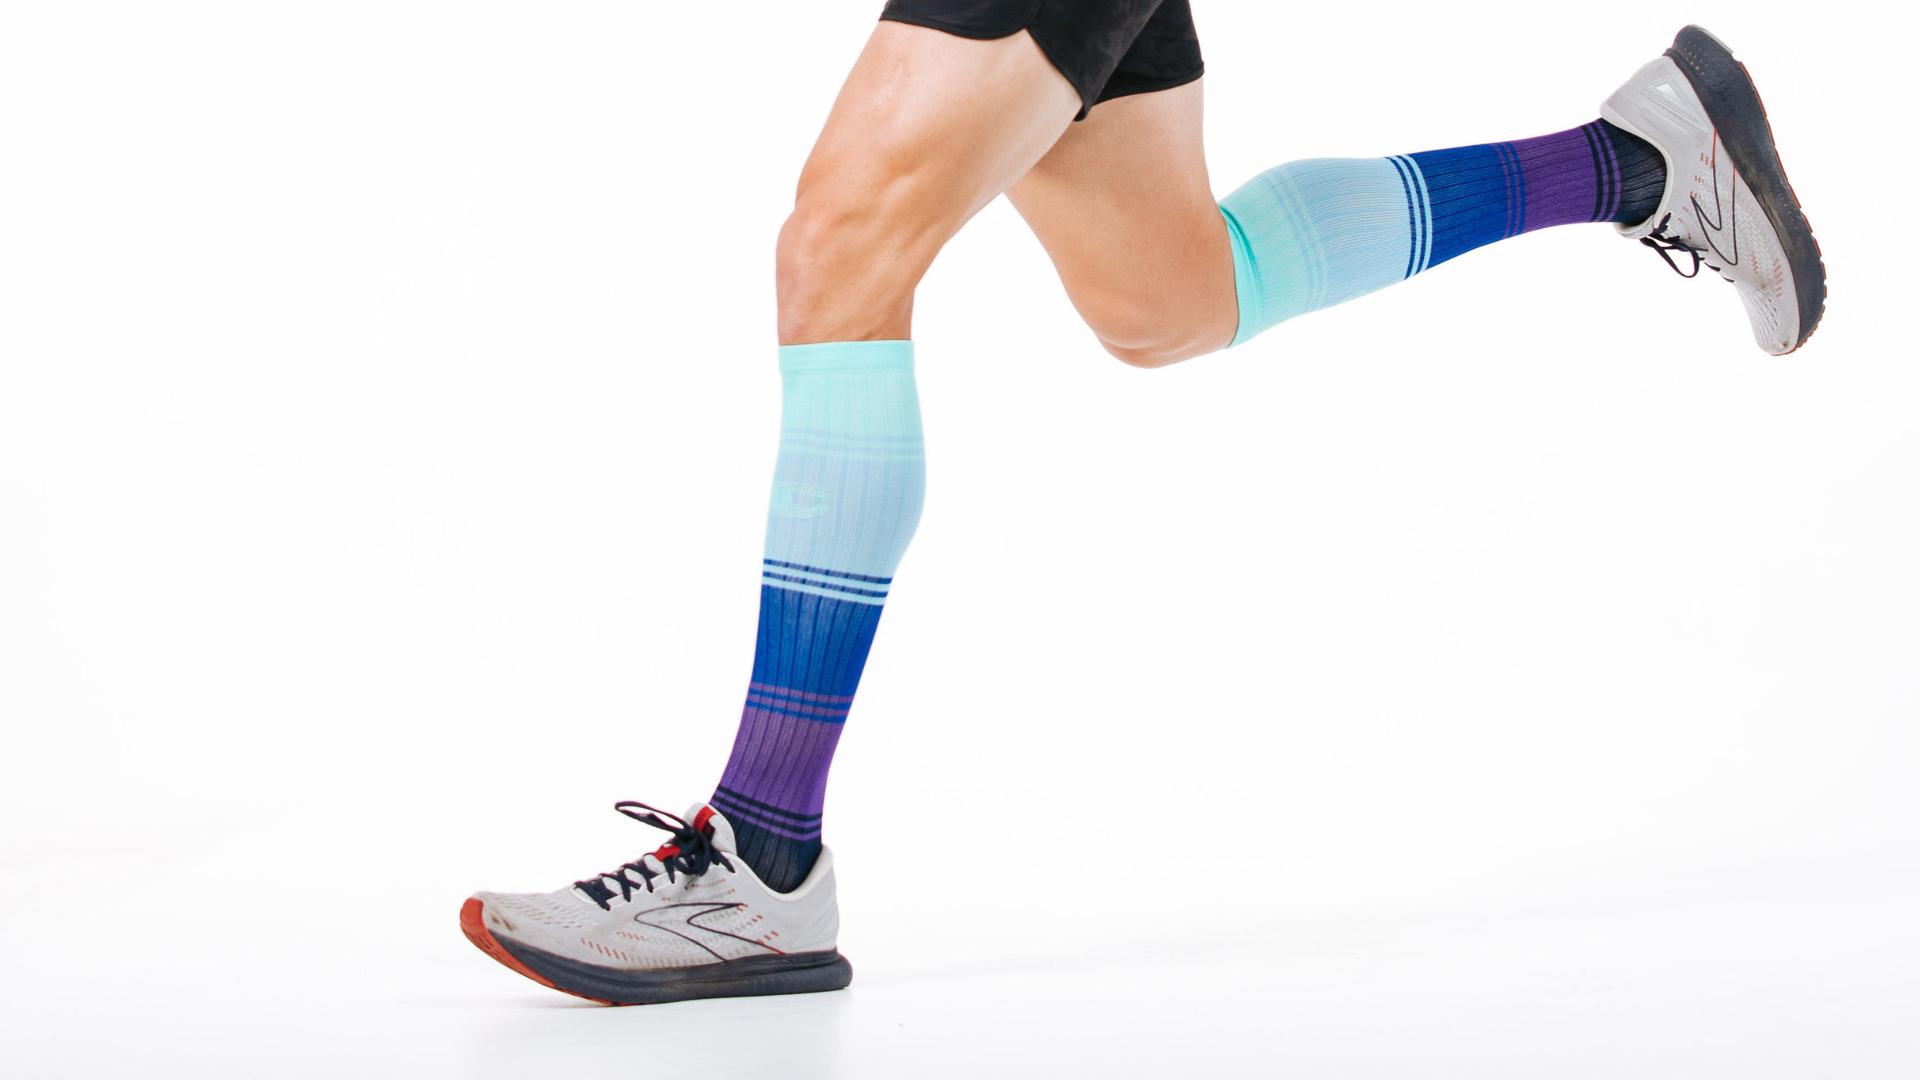 Compression Socks For Women & Men | Knee-high Compression Socks Running ...